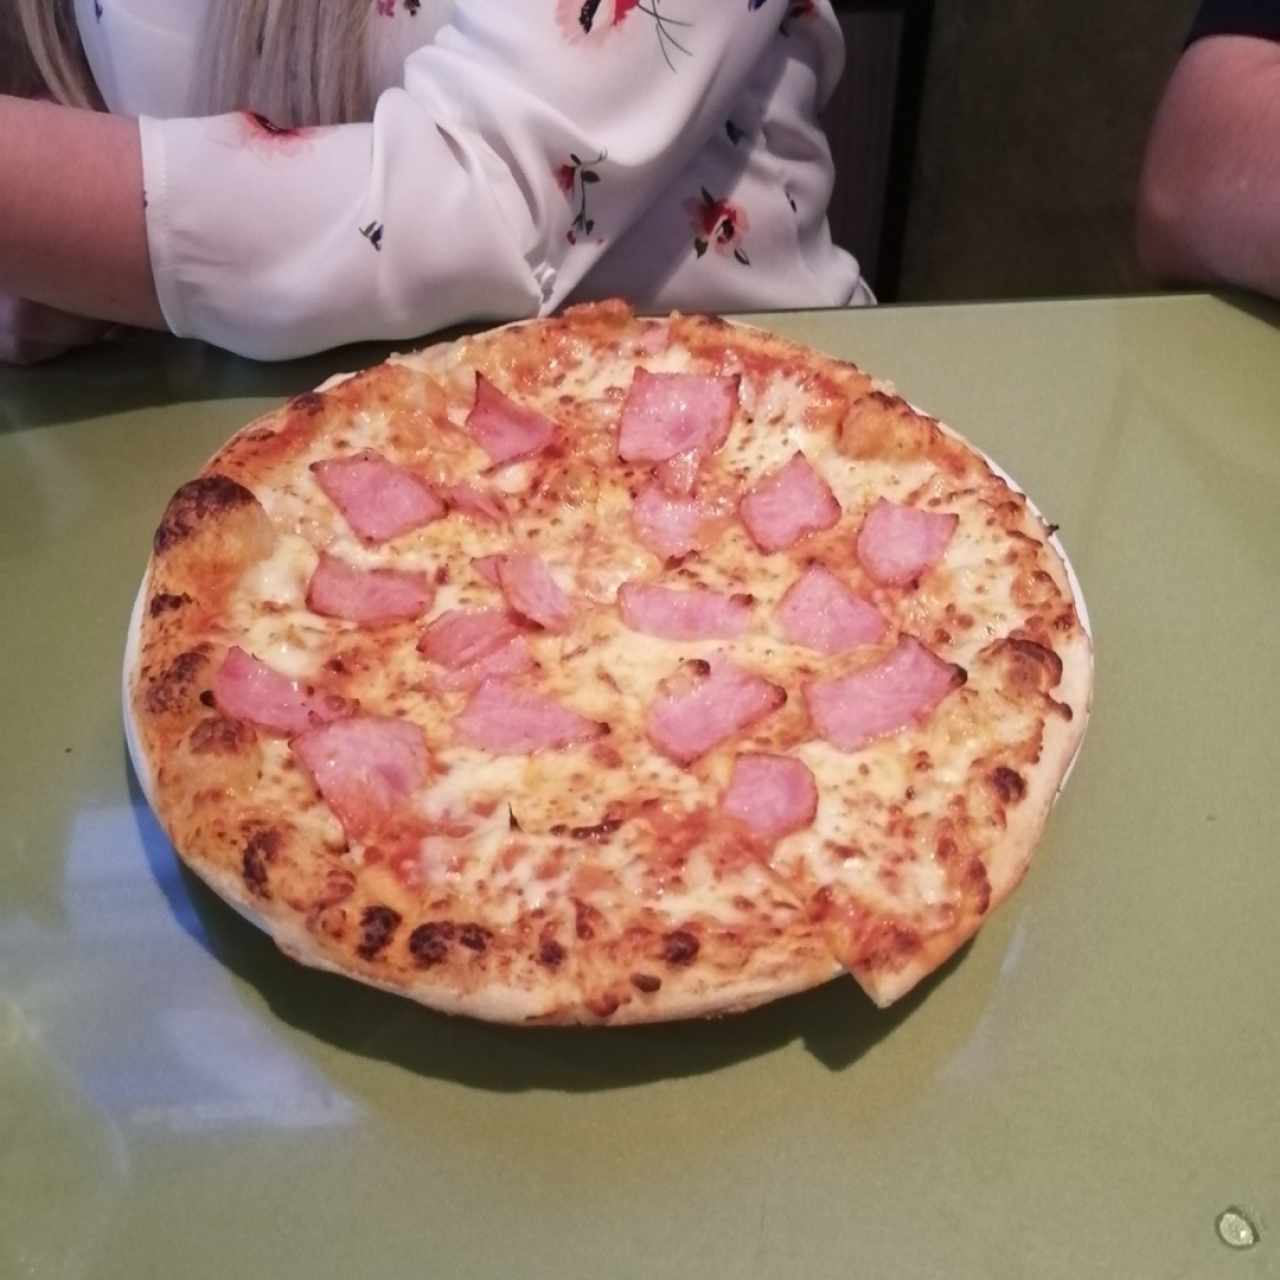 pizza jamon